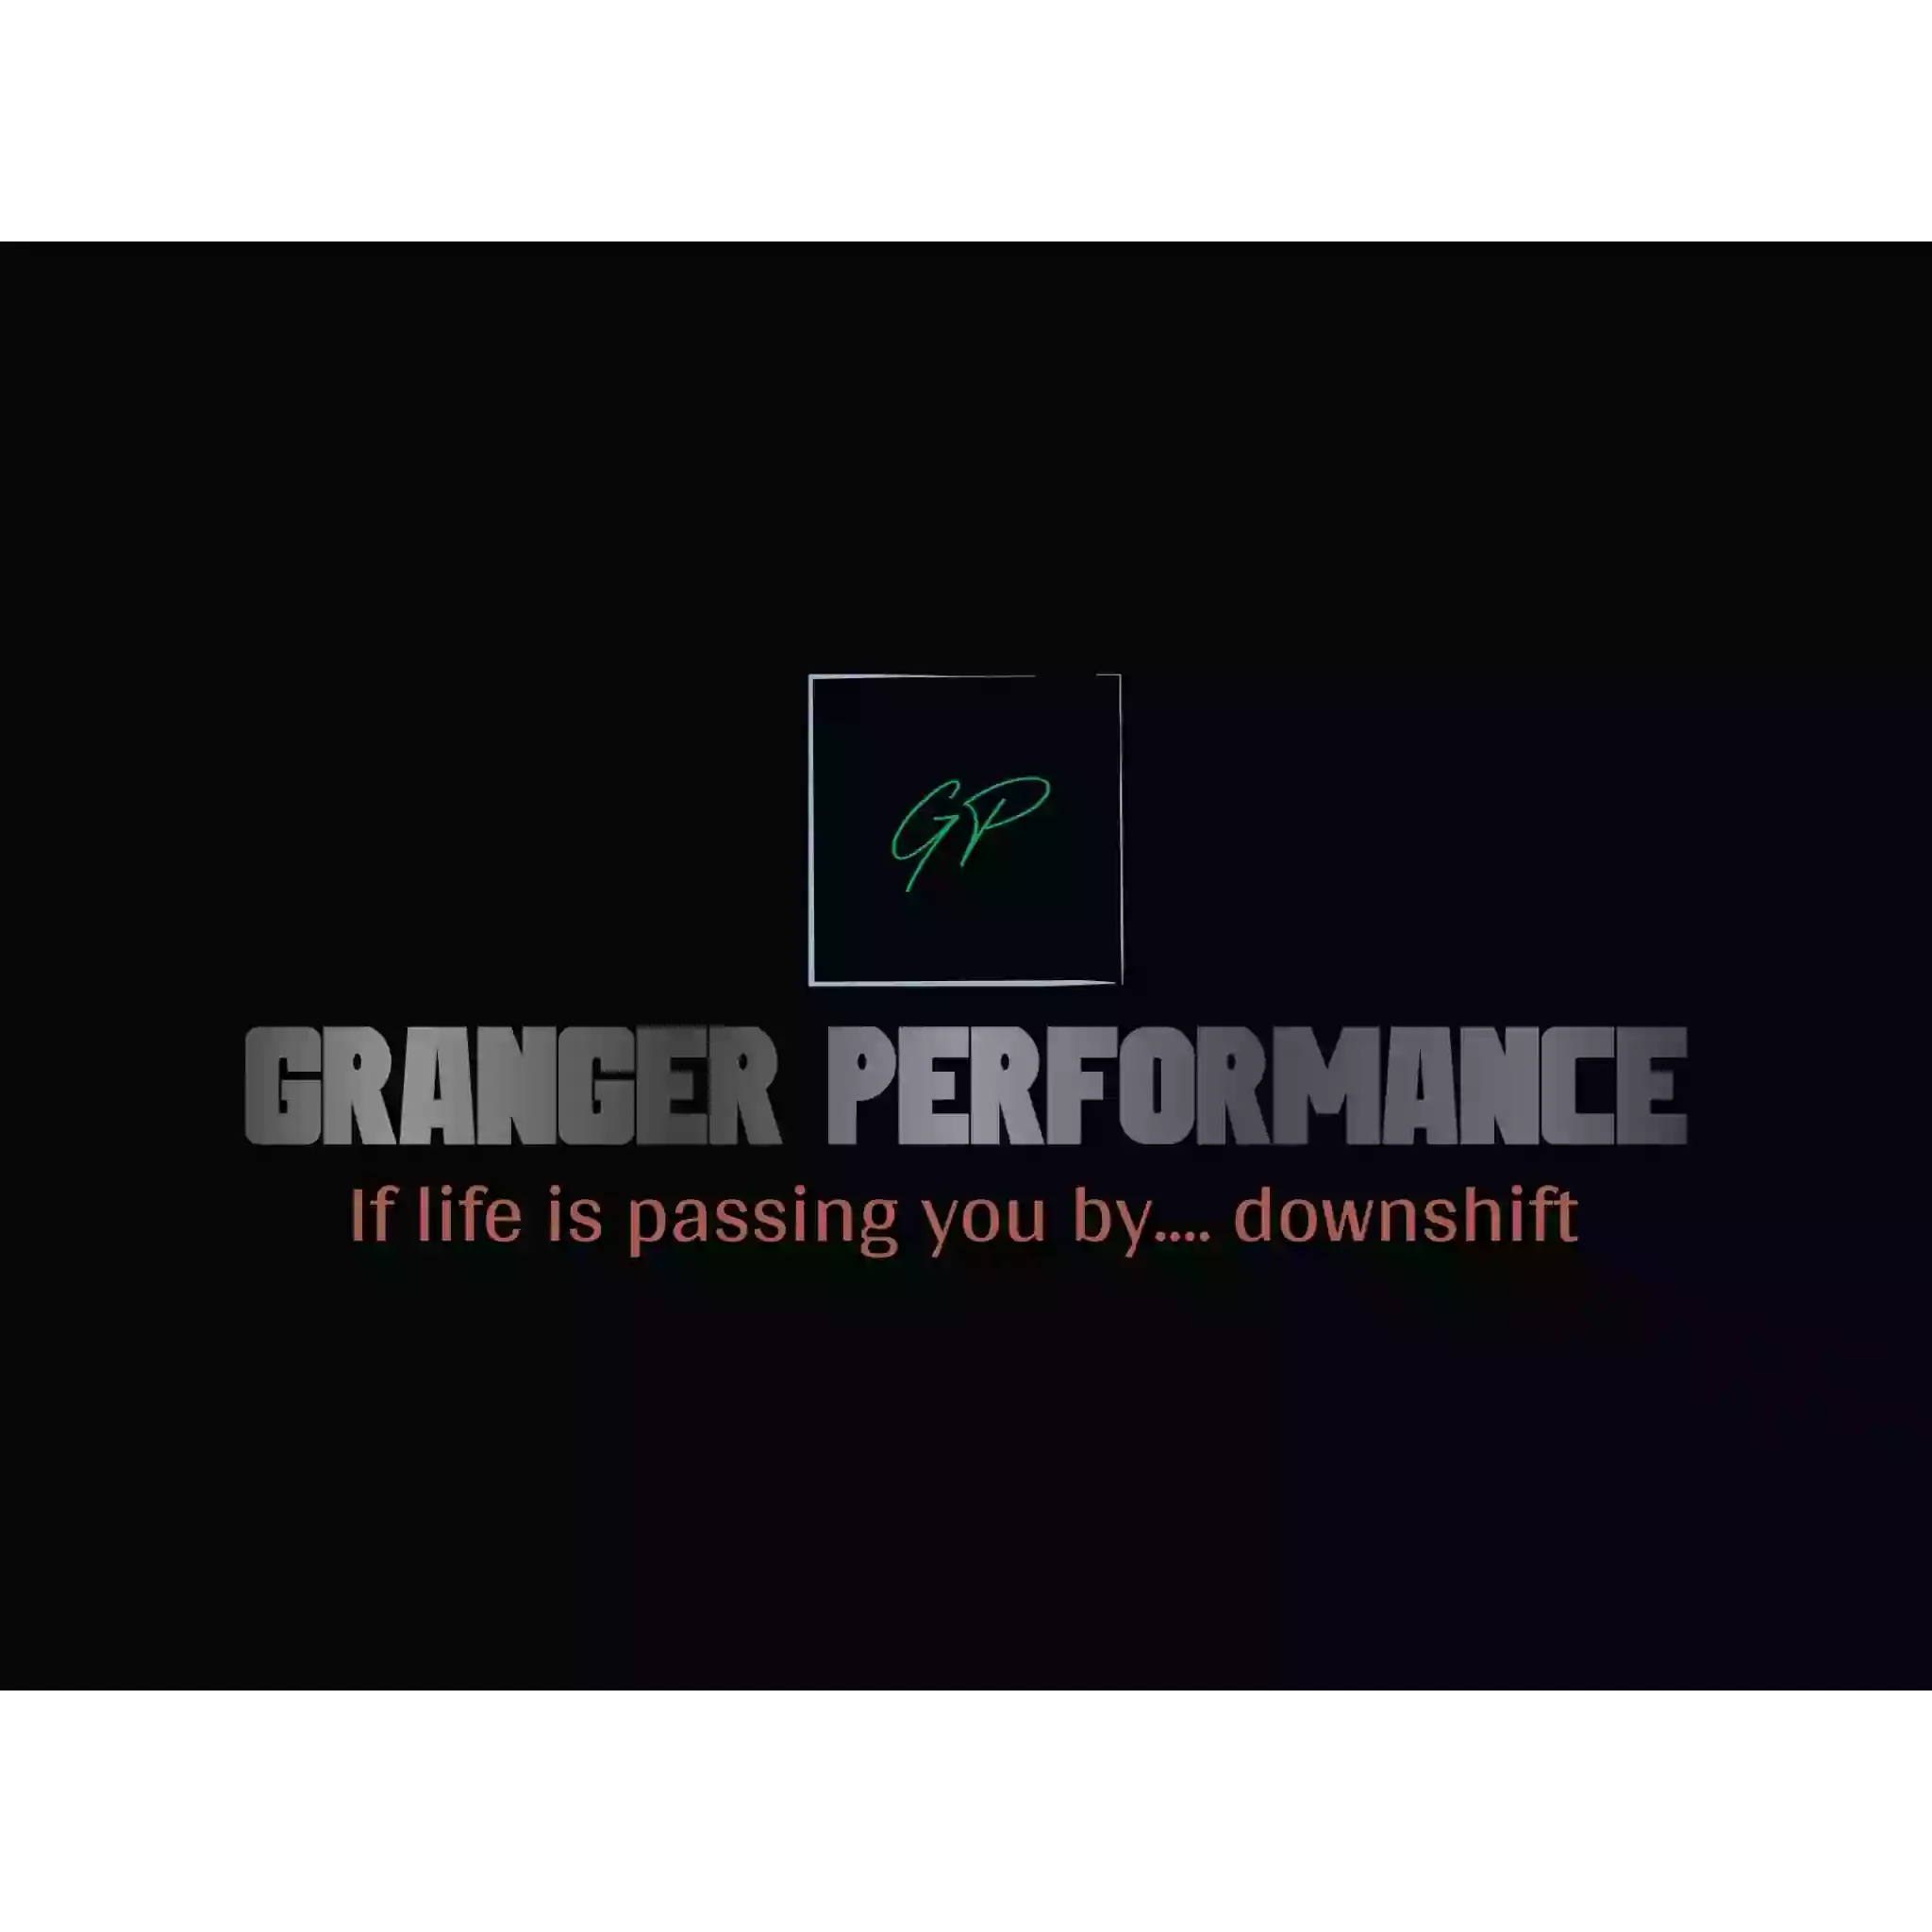 Granger performance